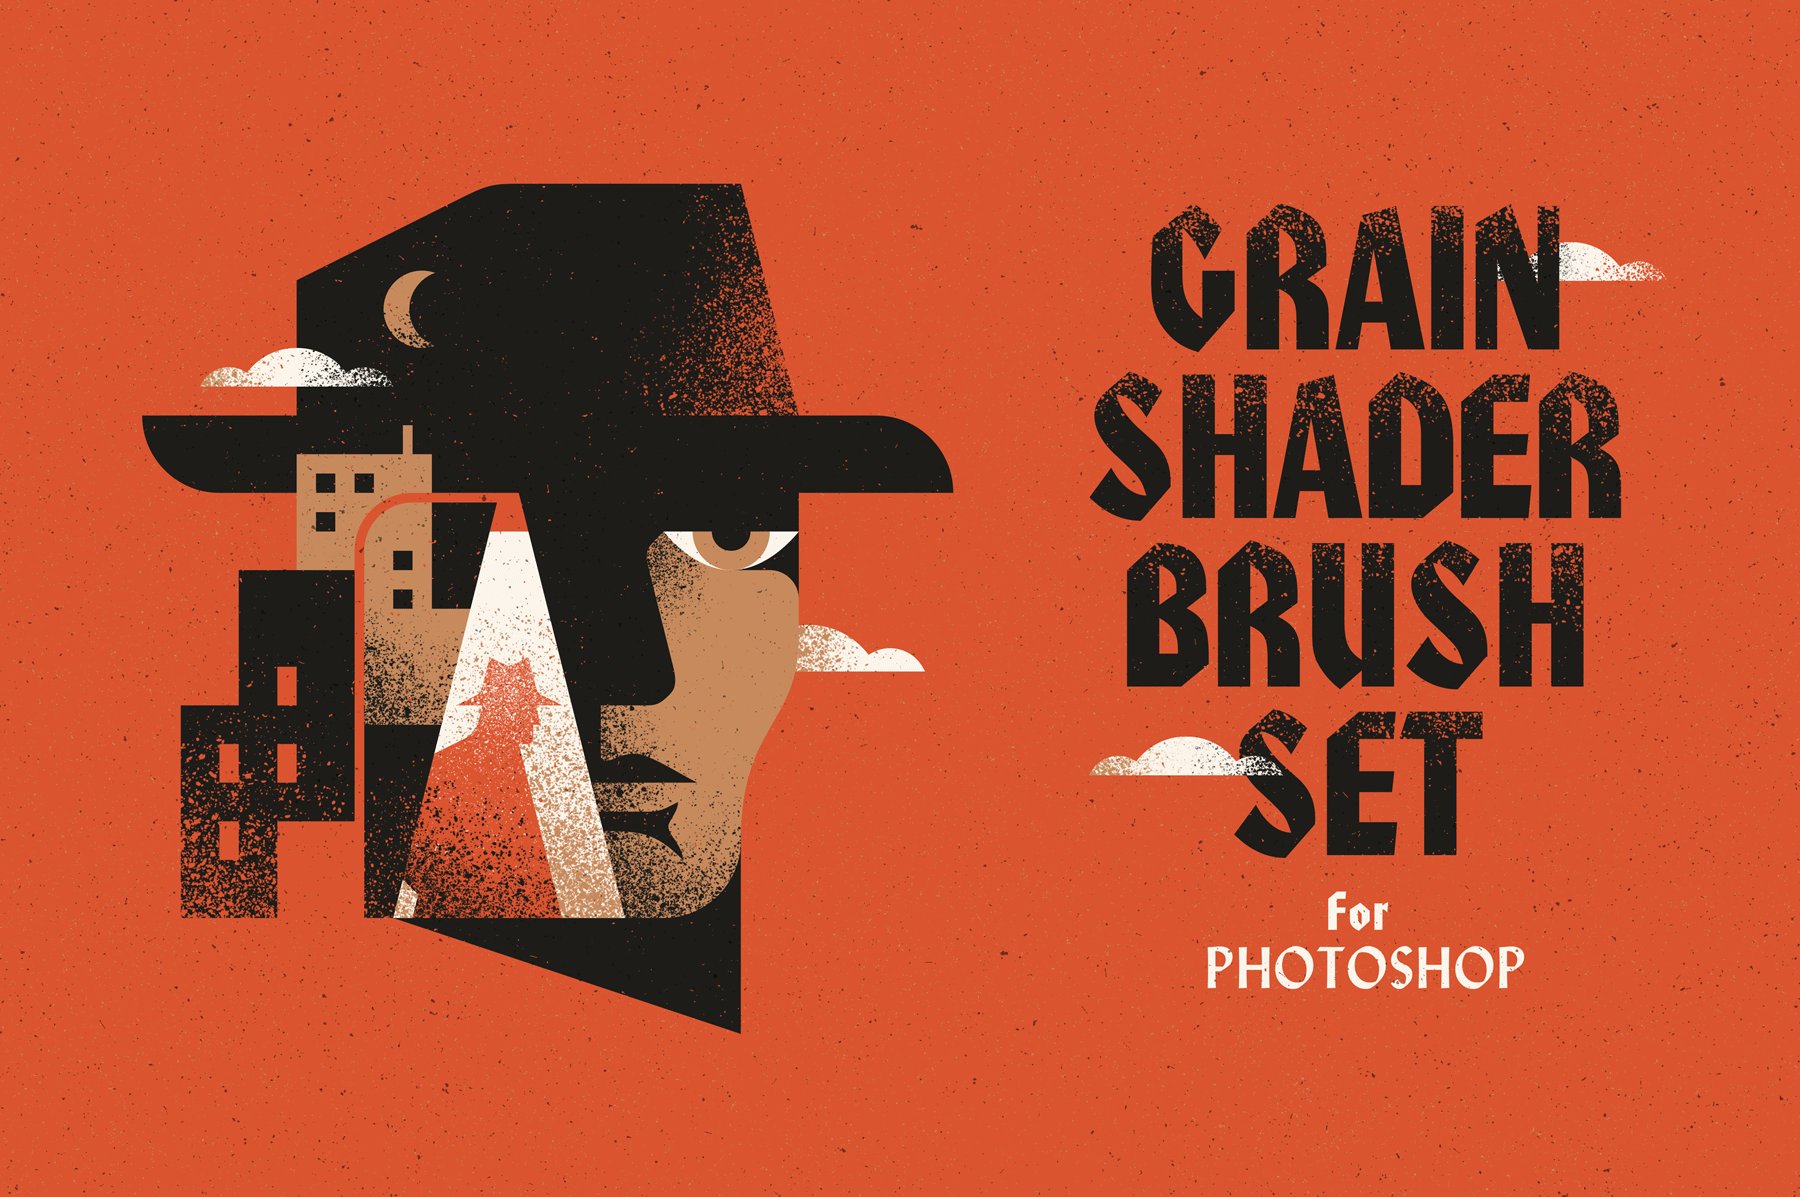 Grain Shader Brush Set for Photoshopcover image.